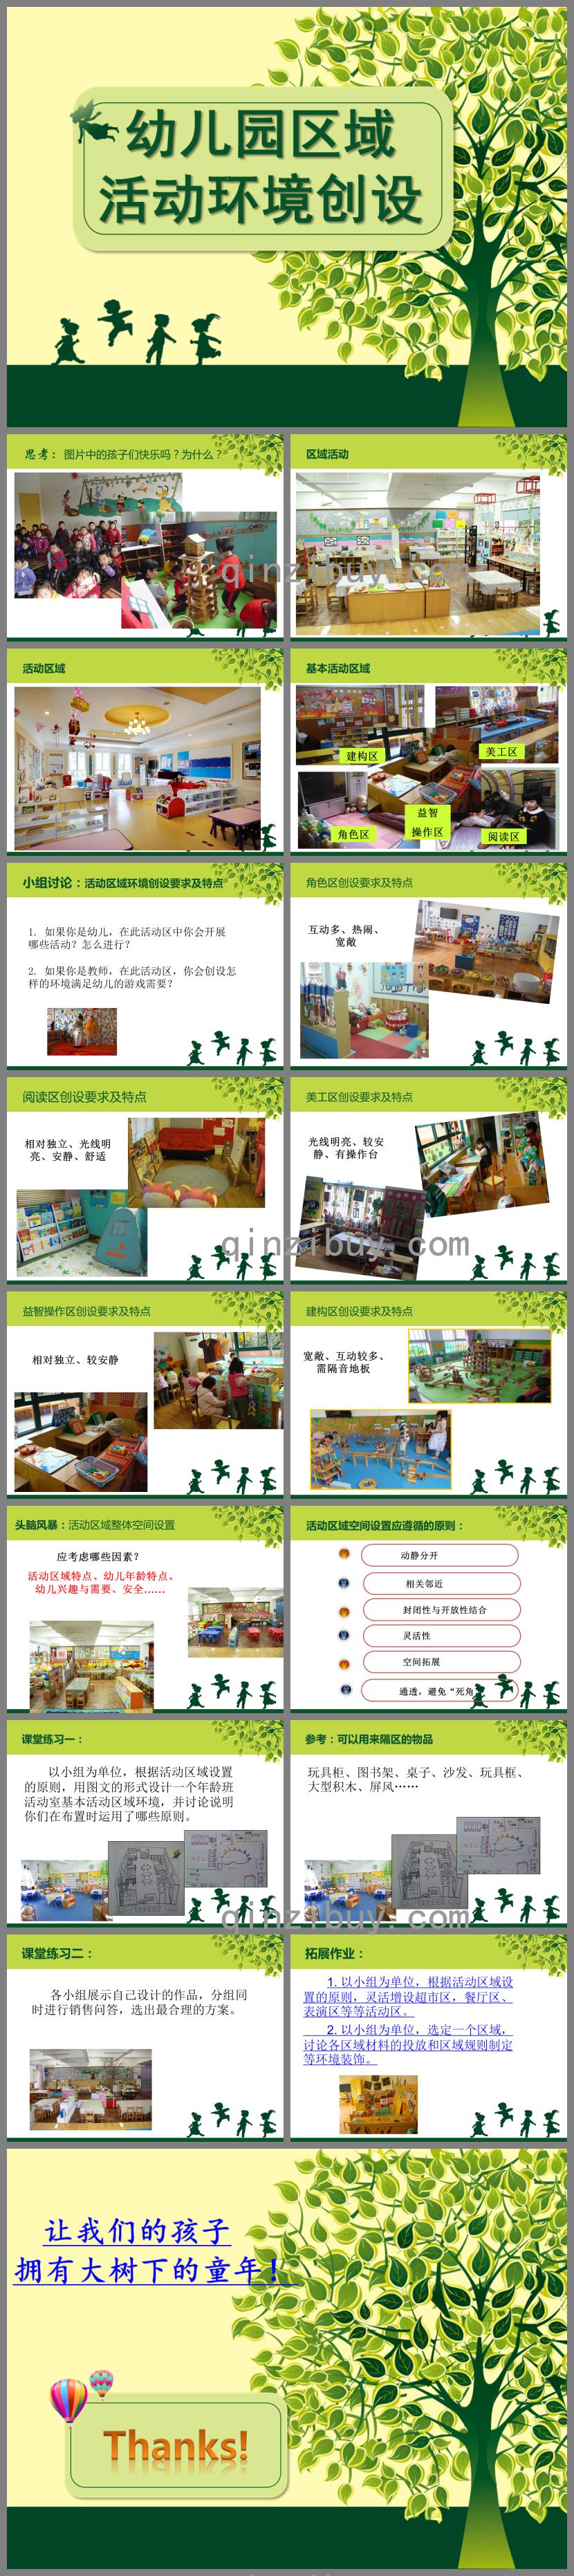 幼儿园区域活动环境创设PPT课件